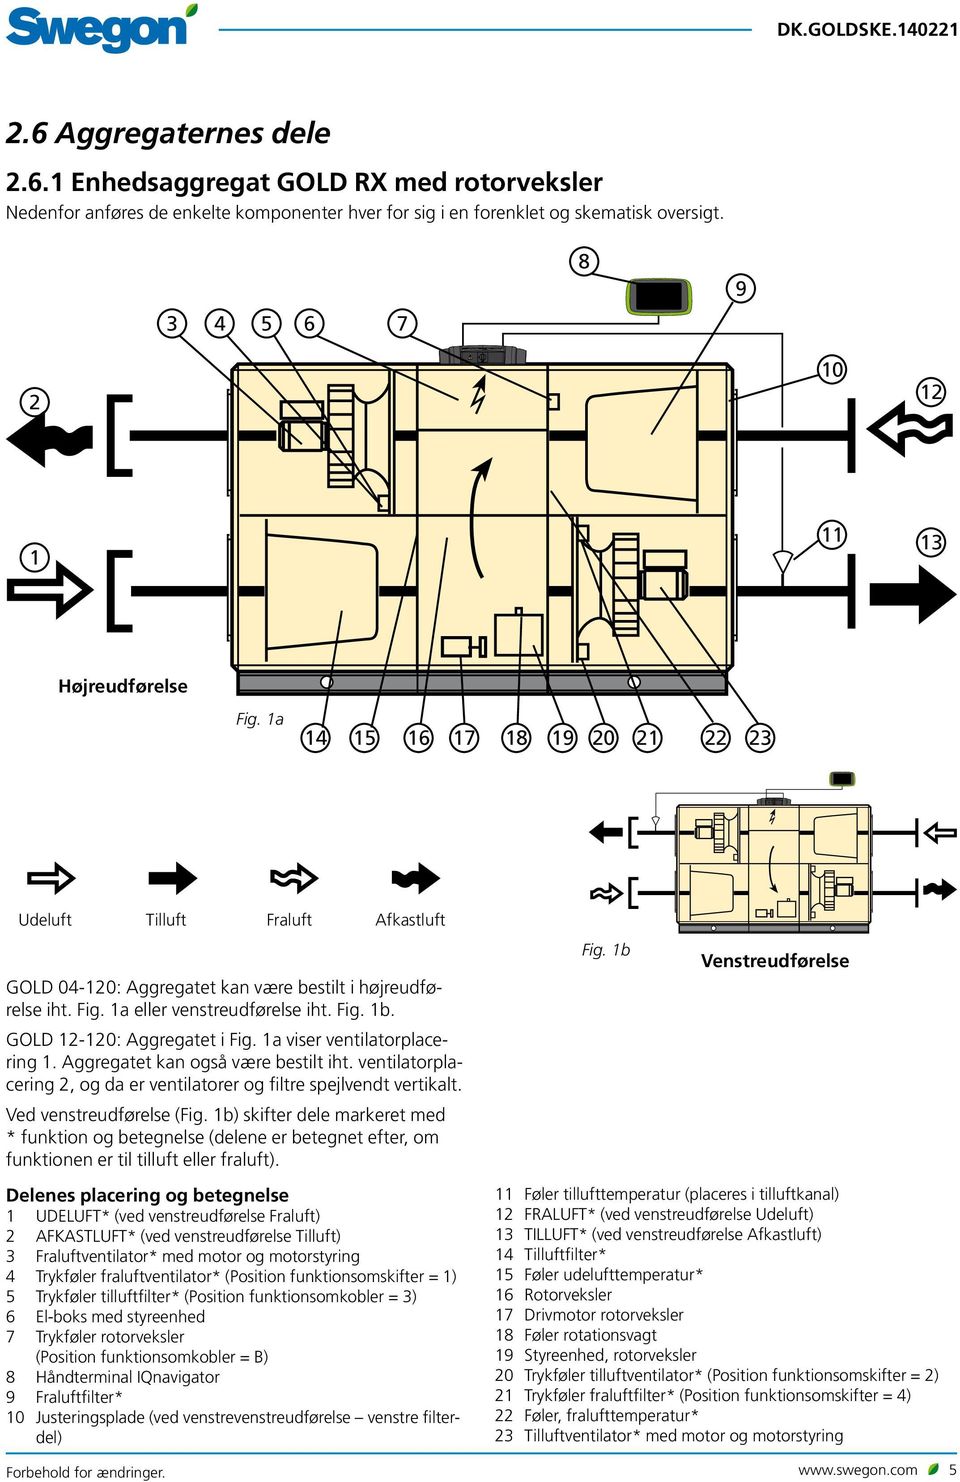 Fig. 1b. GOLD 12-120: Aggregatet i Fig. 1a viser ventilatorplacering 1. Aggregatet kan også være bestilt iht. ventilatorplacering 2, og da er ventilatorer og filtre spejlvendt vertikalt.